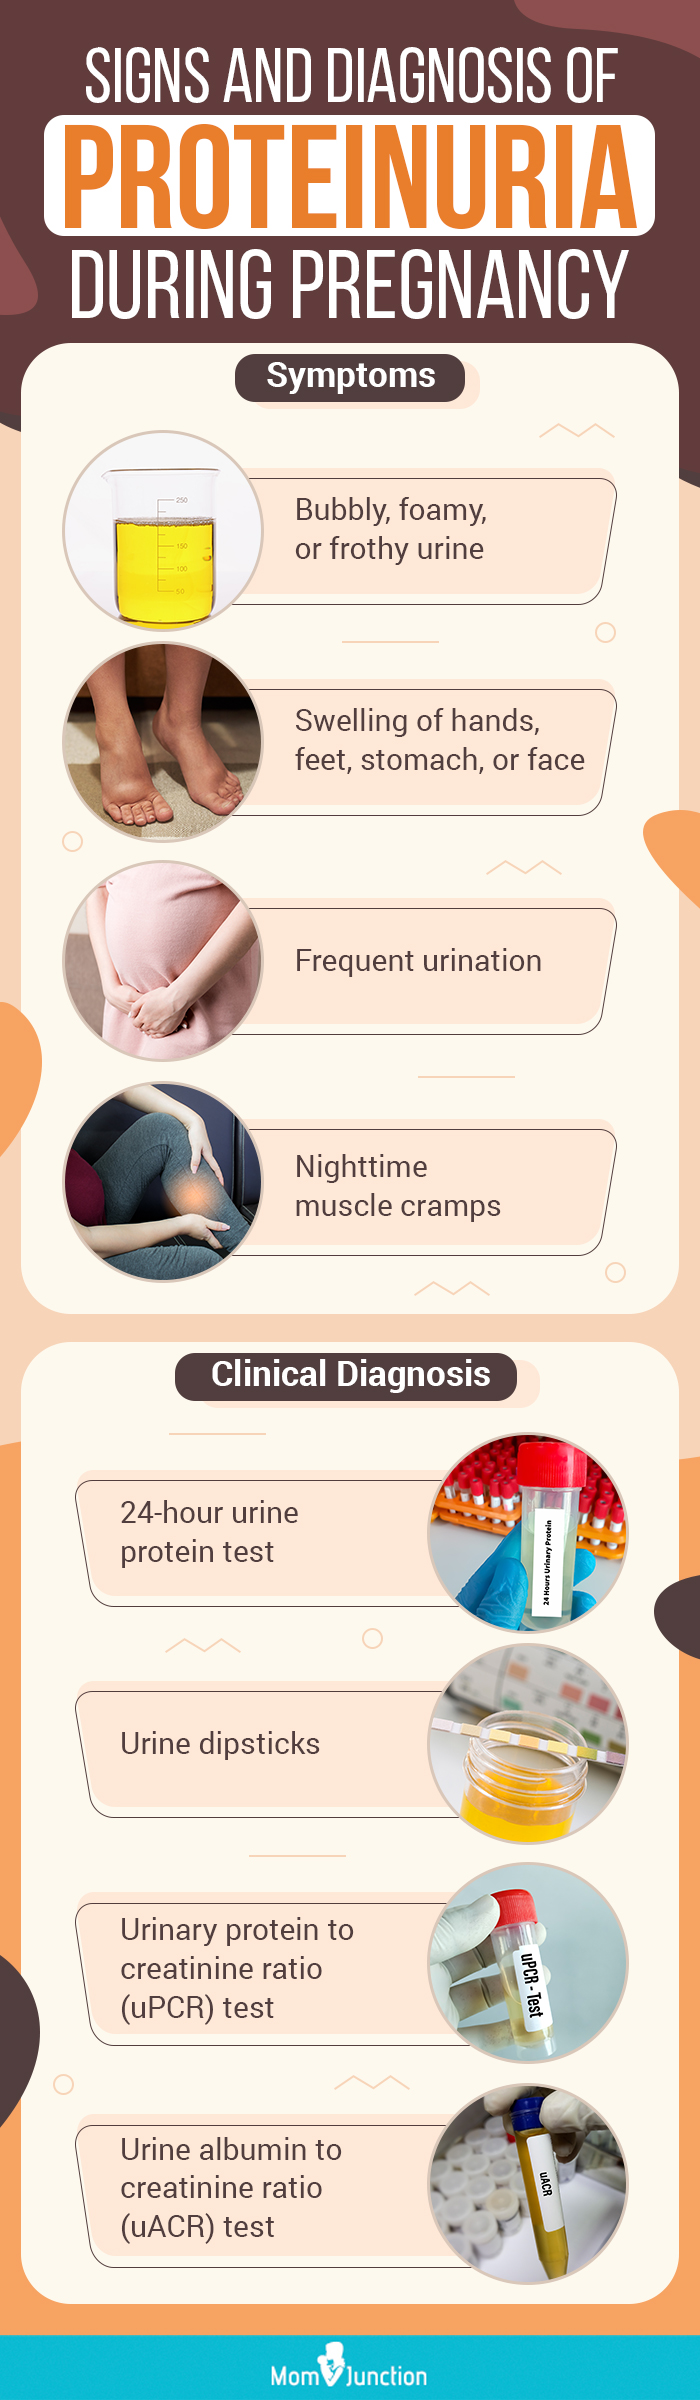 妊娠期蛋白尿的体征和诊断(信息图)manbet安卓版